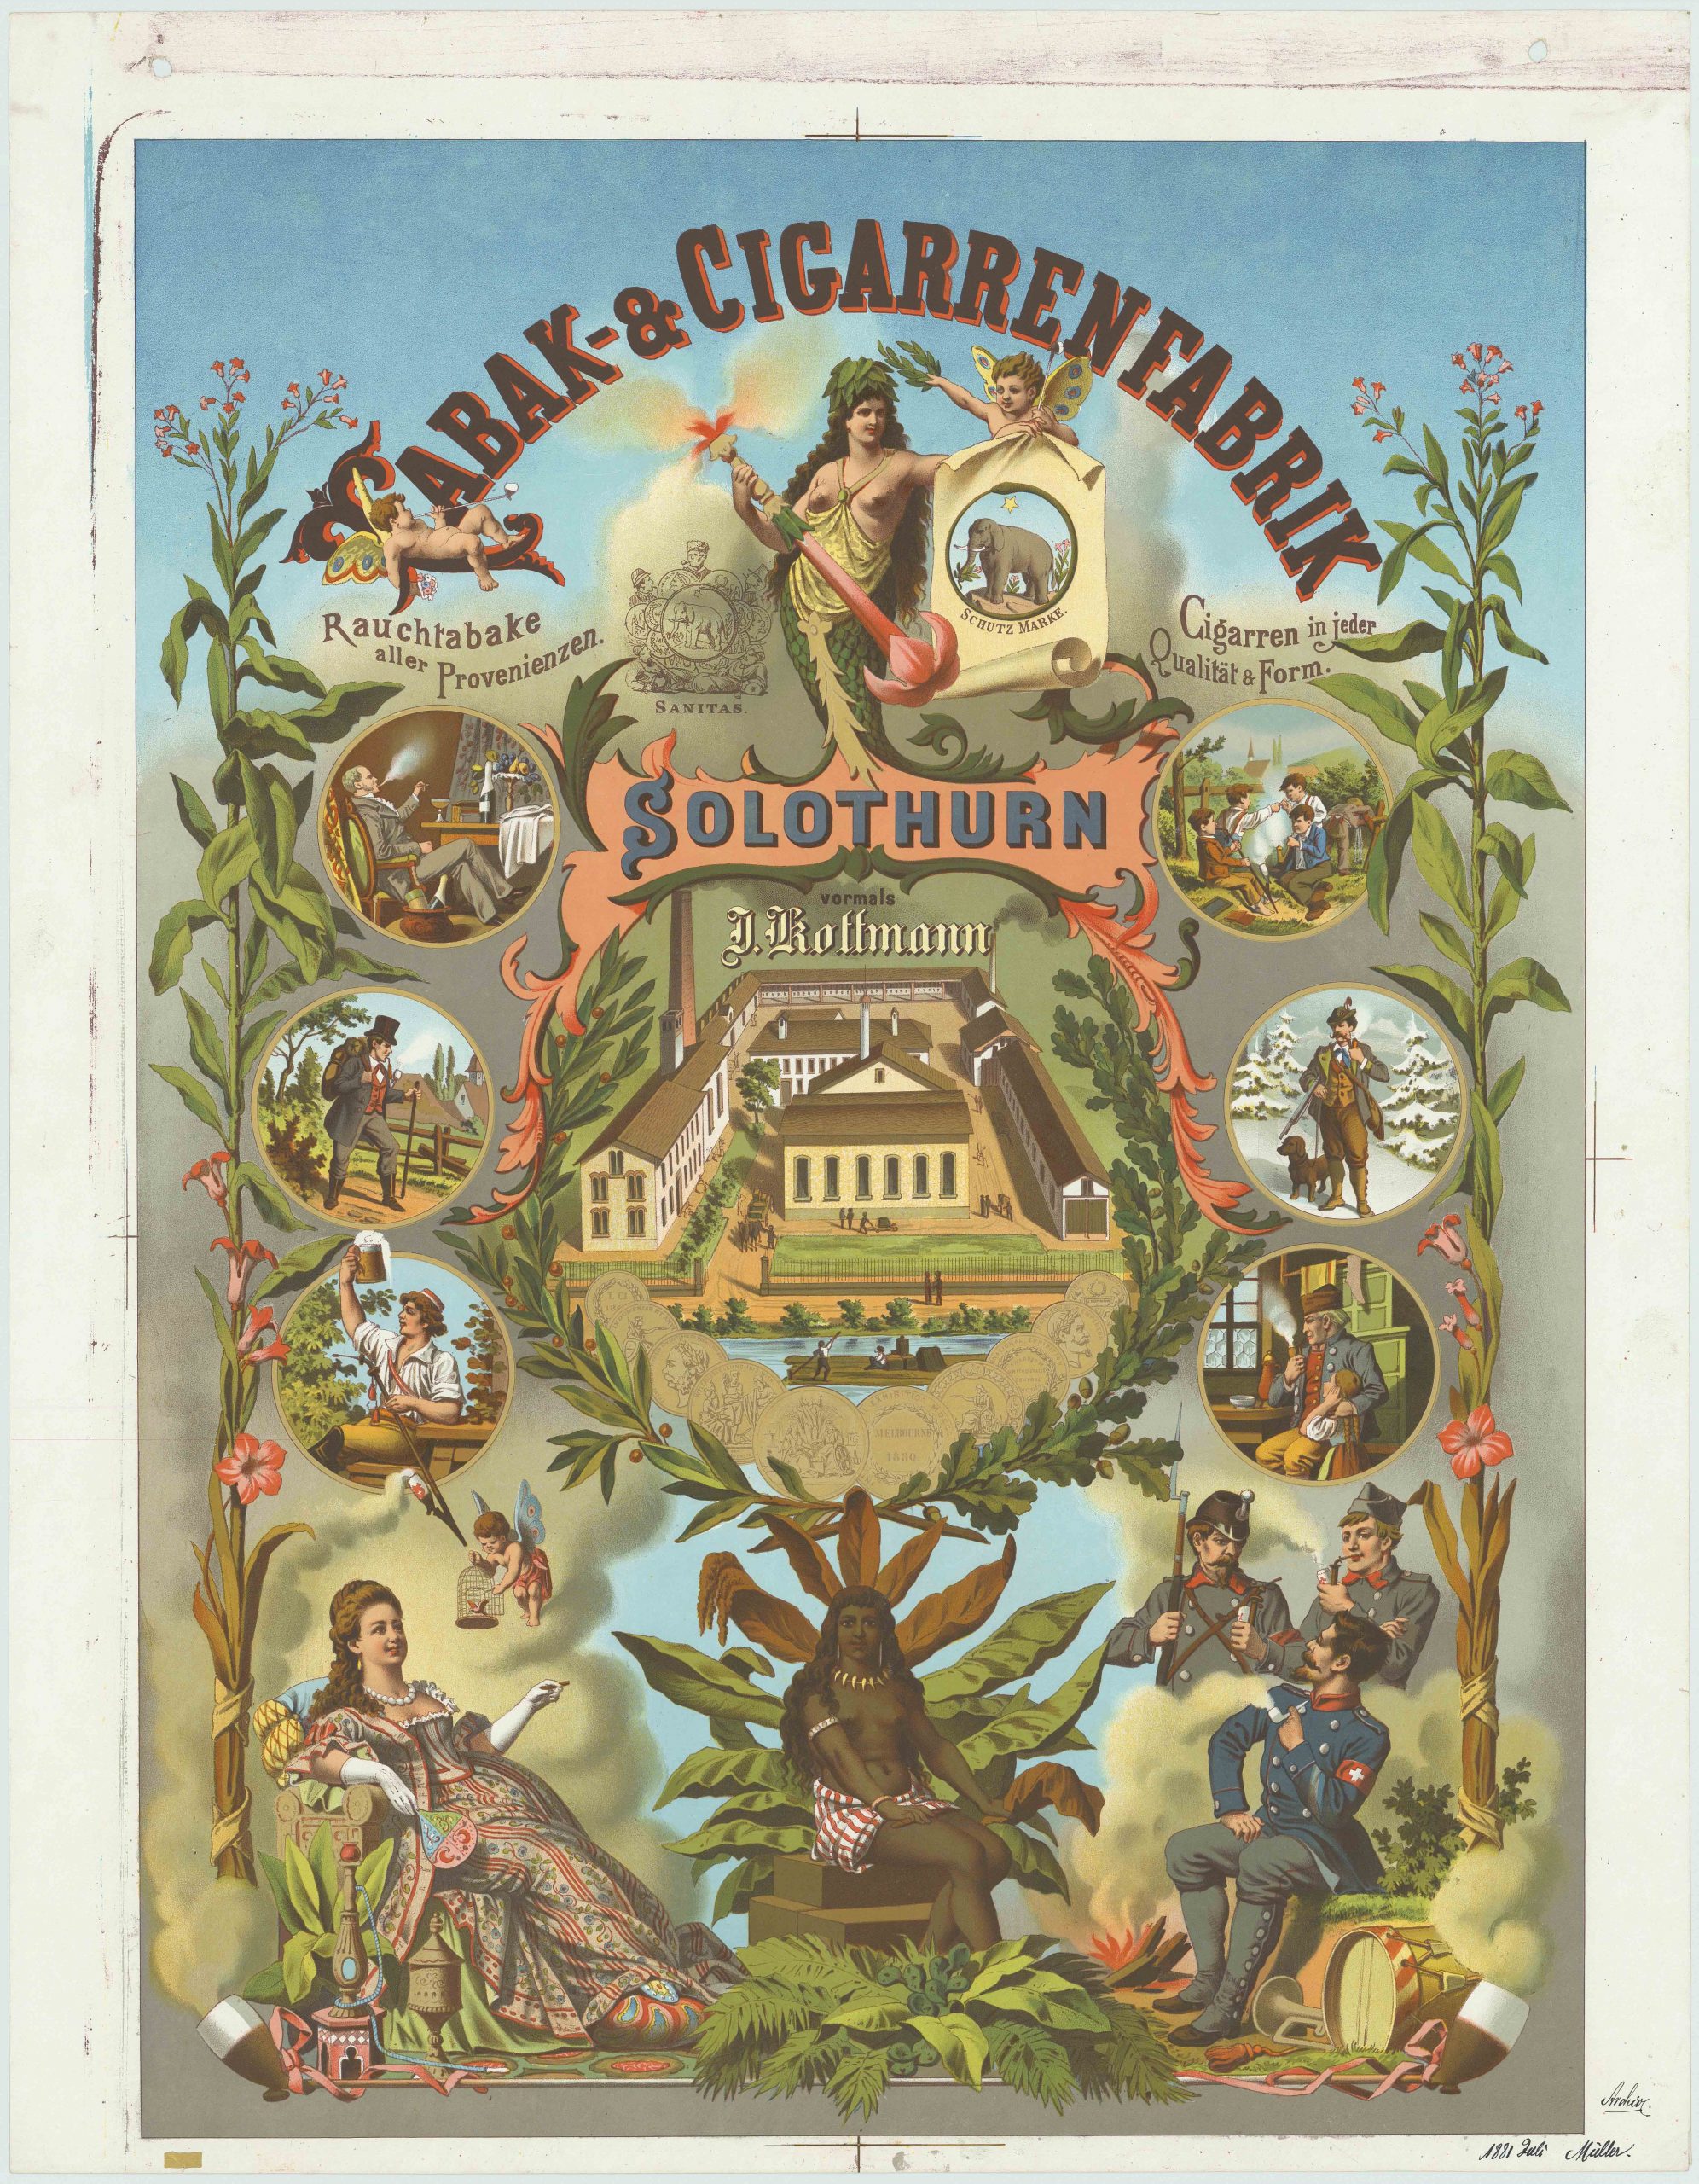 Werbeplakat für die „Tabak & Cigarerrenfabrik Solothurn“, 1881, Chromolithografie